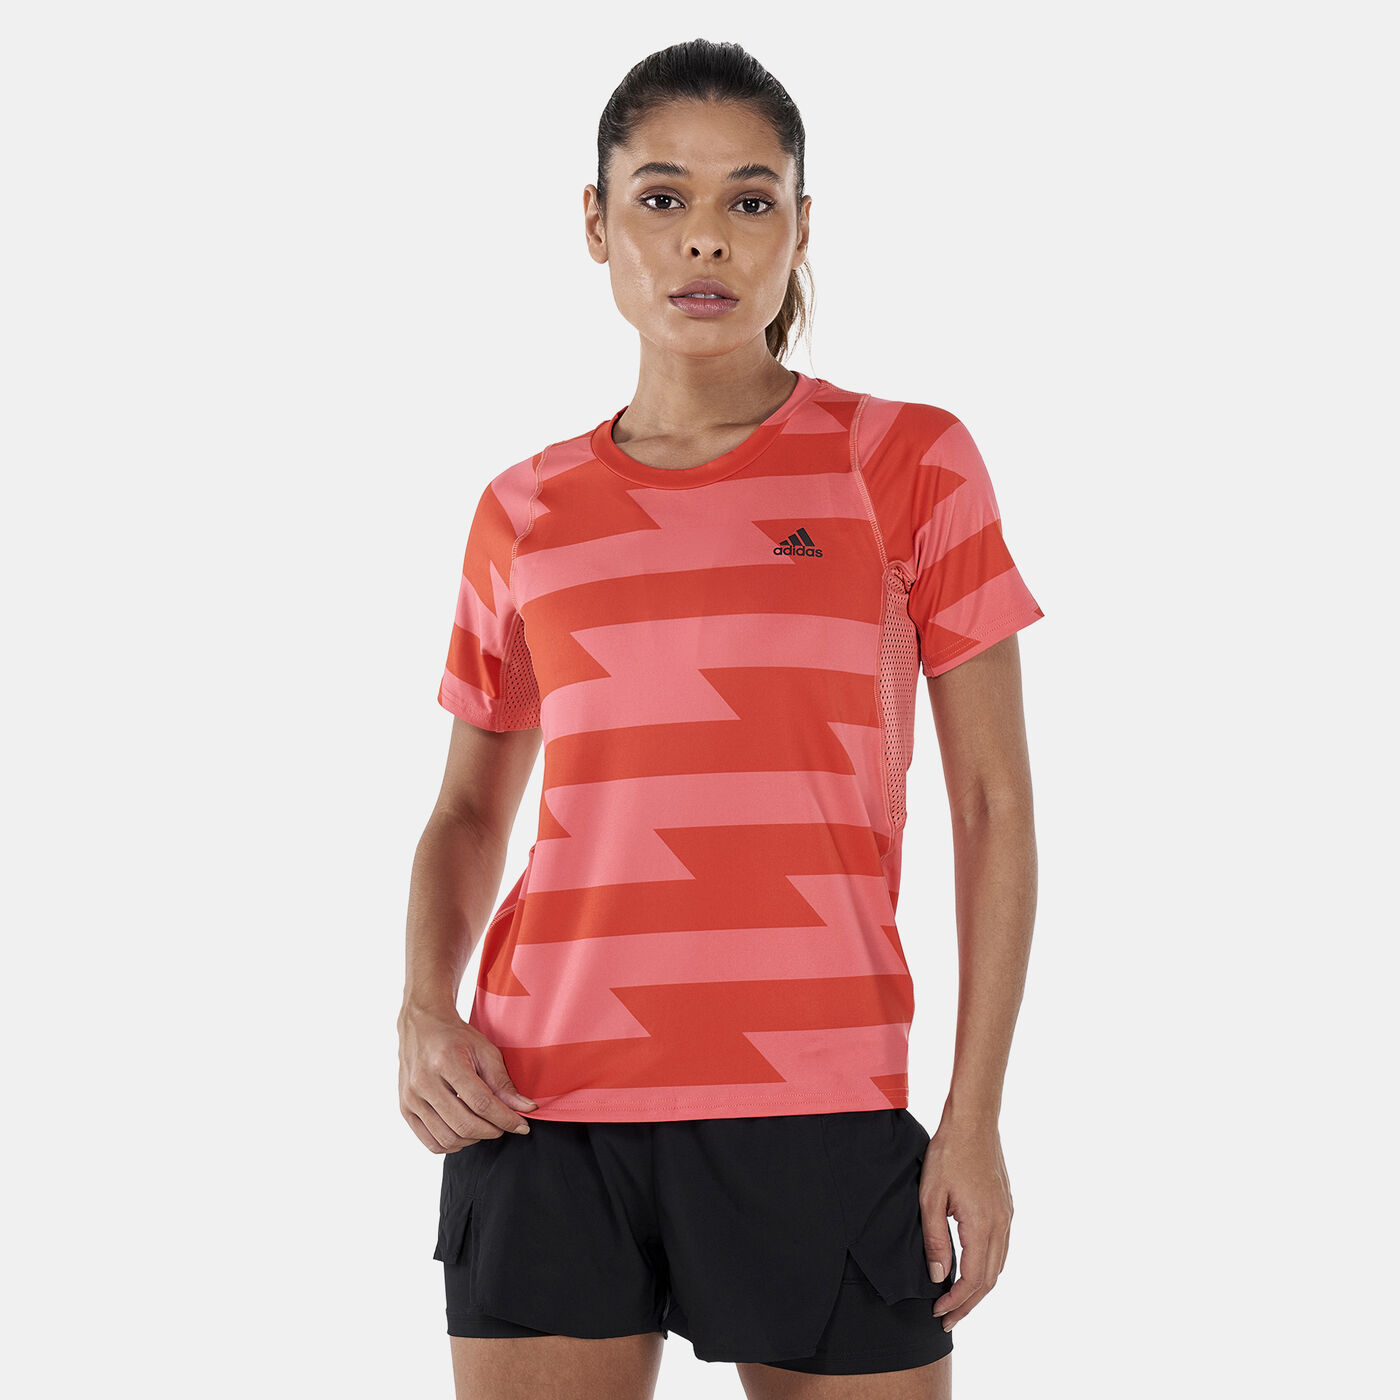 Women's Run Fast All Over Print T-Shirt